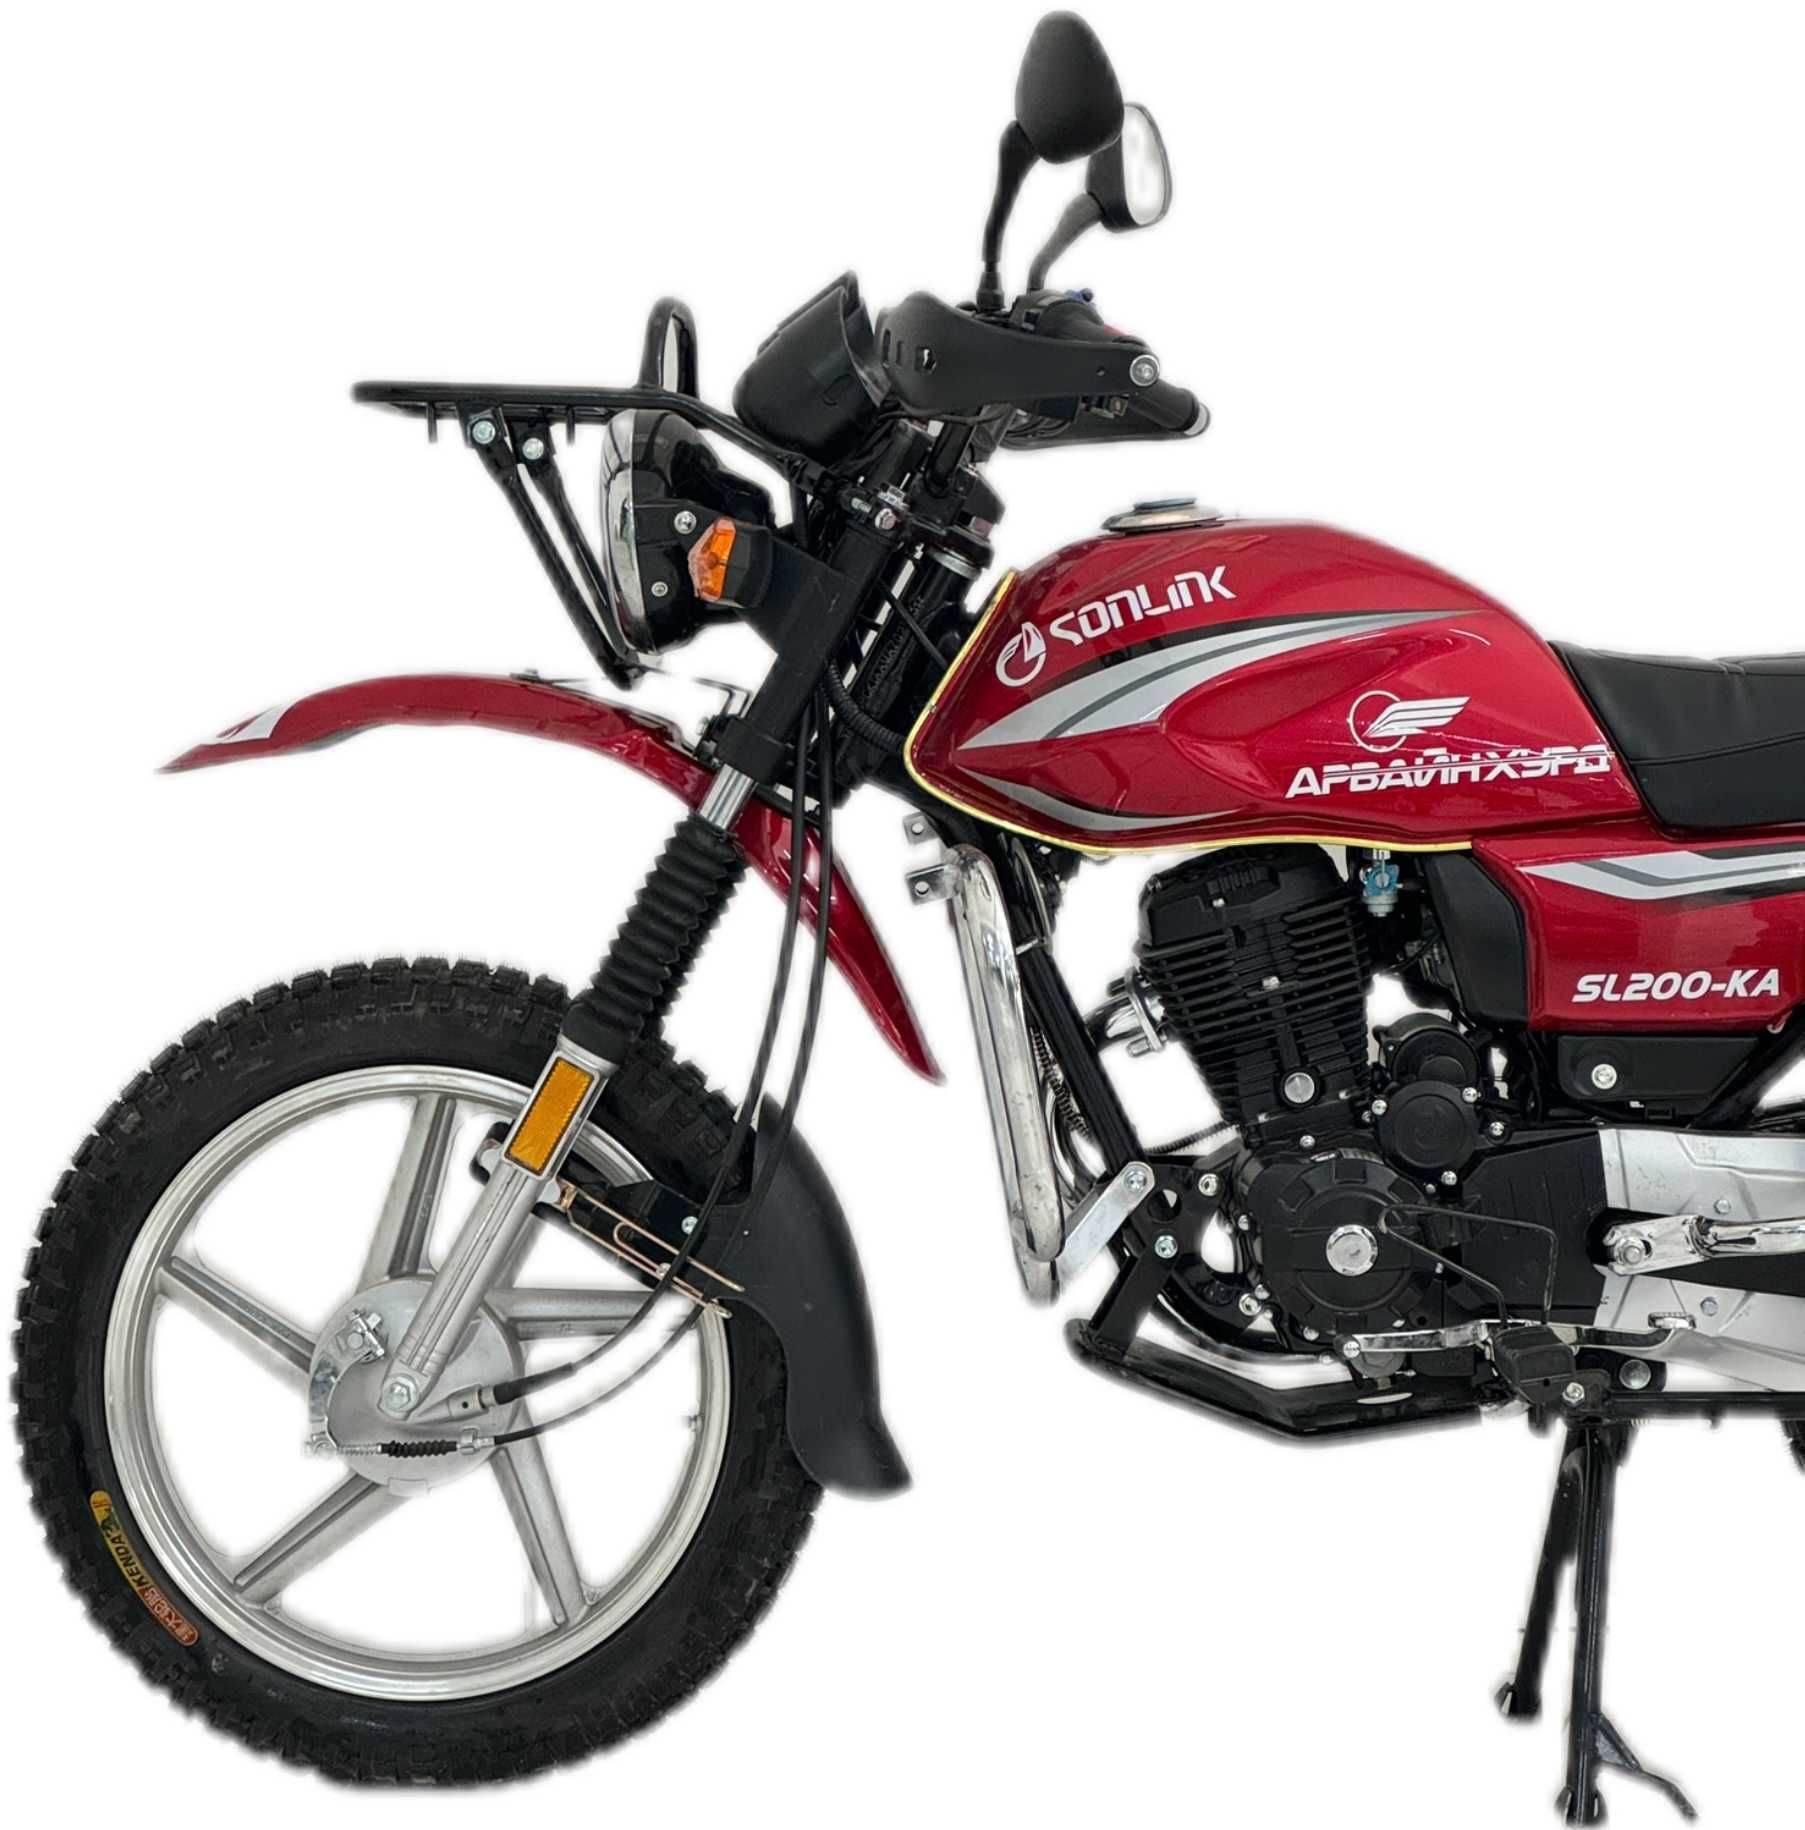 Мотоцикл Сонлинк 200 куб